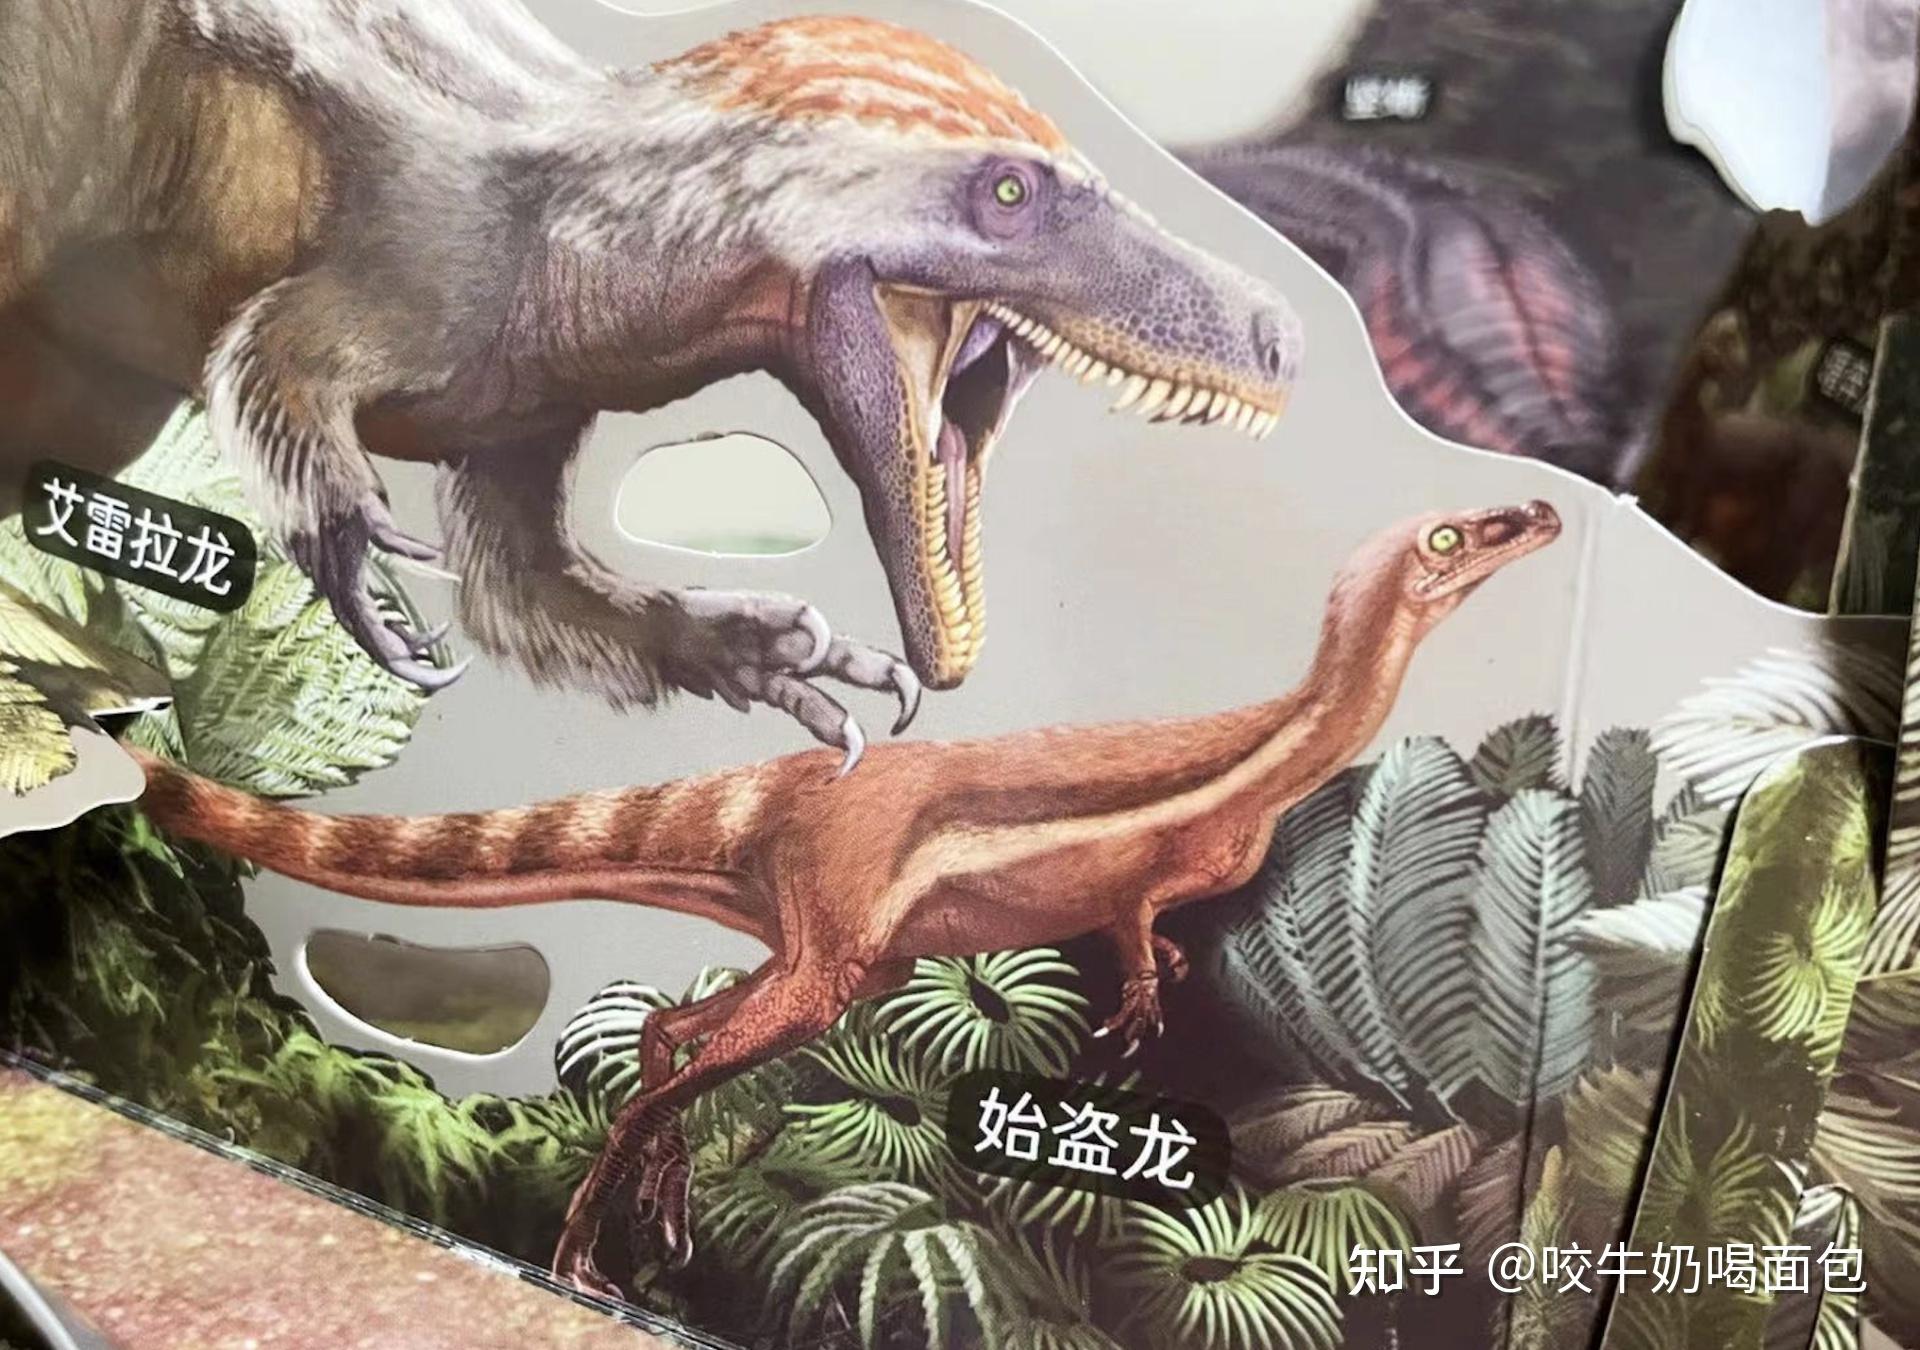 我和儿子的恐龙探秘之旅～关于恐龙的一切你都知道吗?